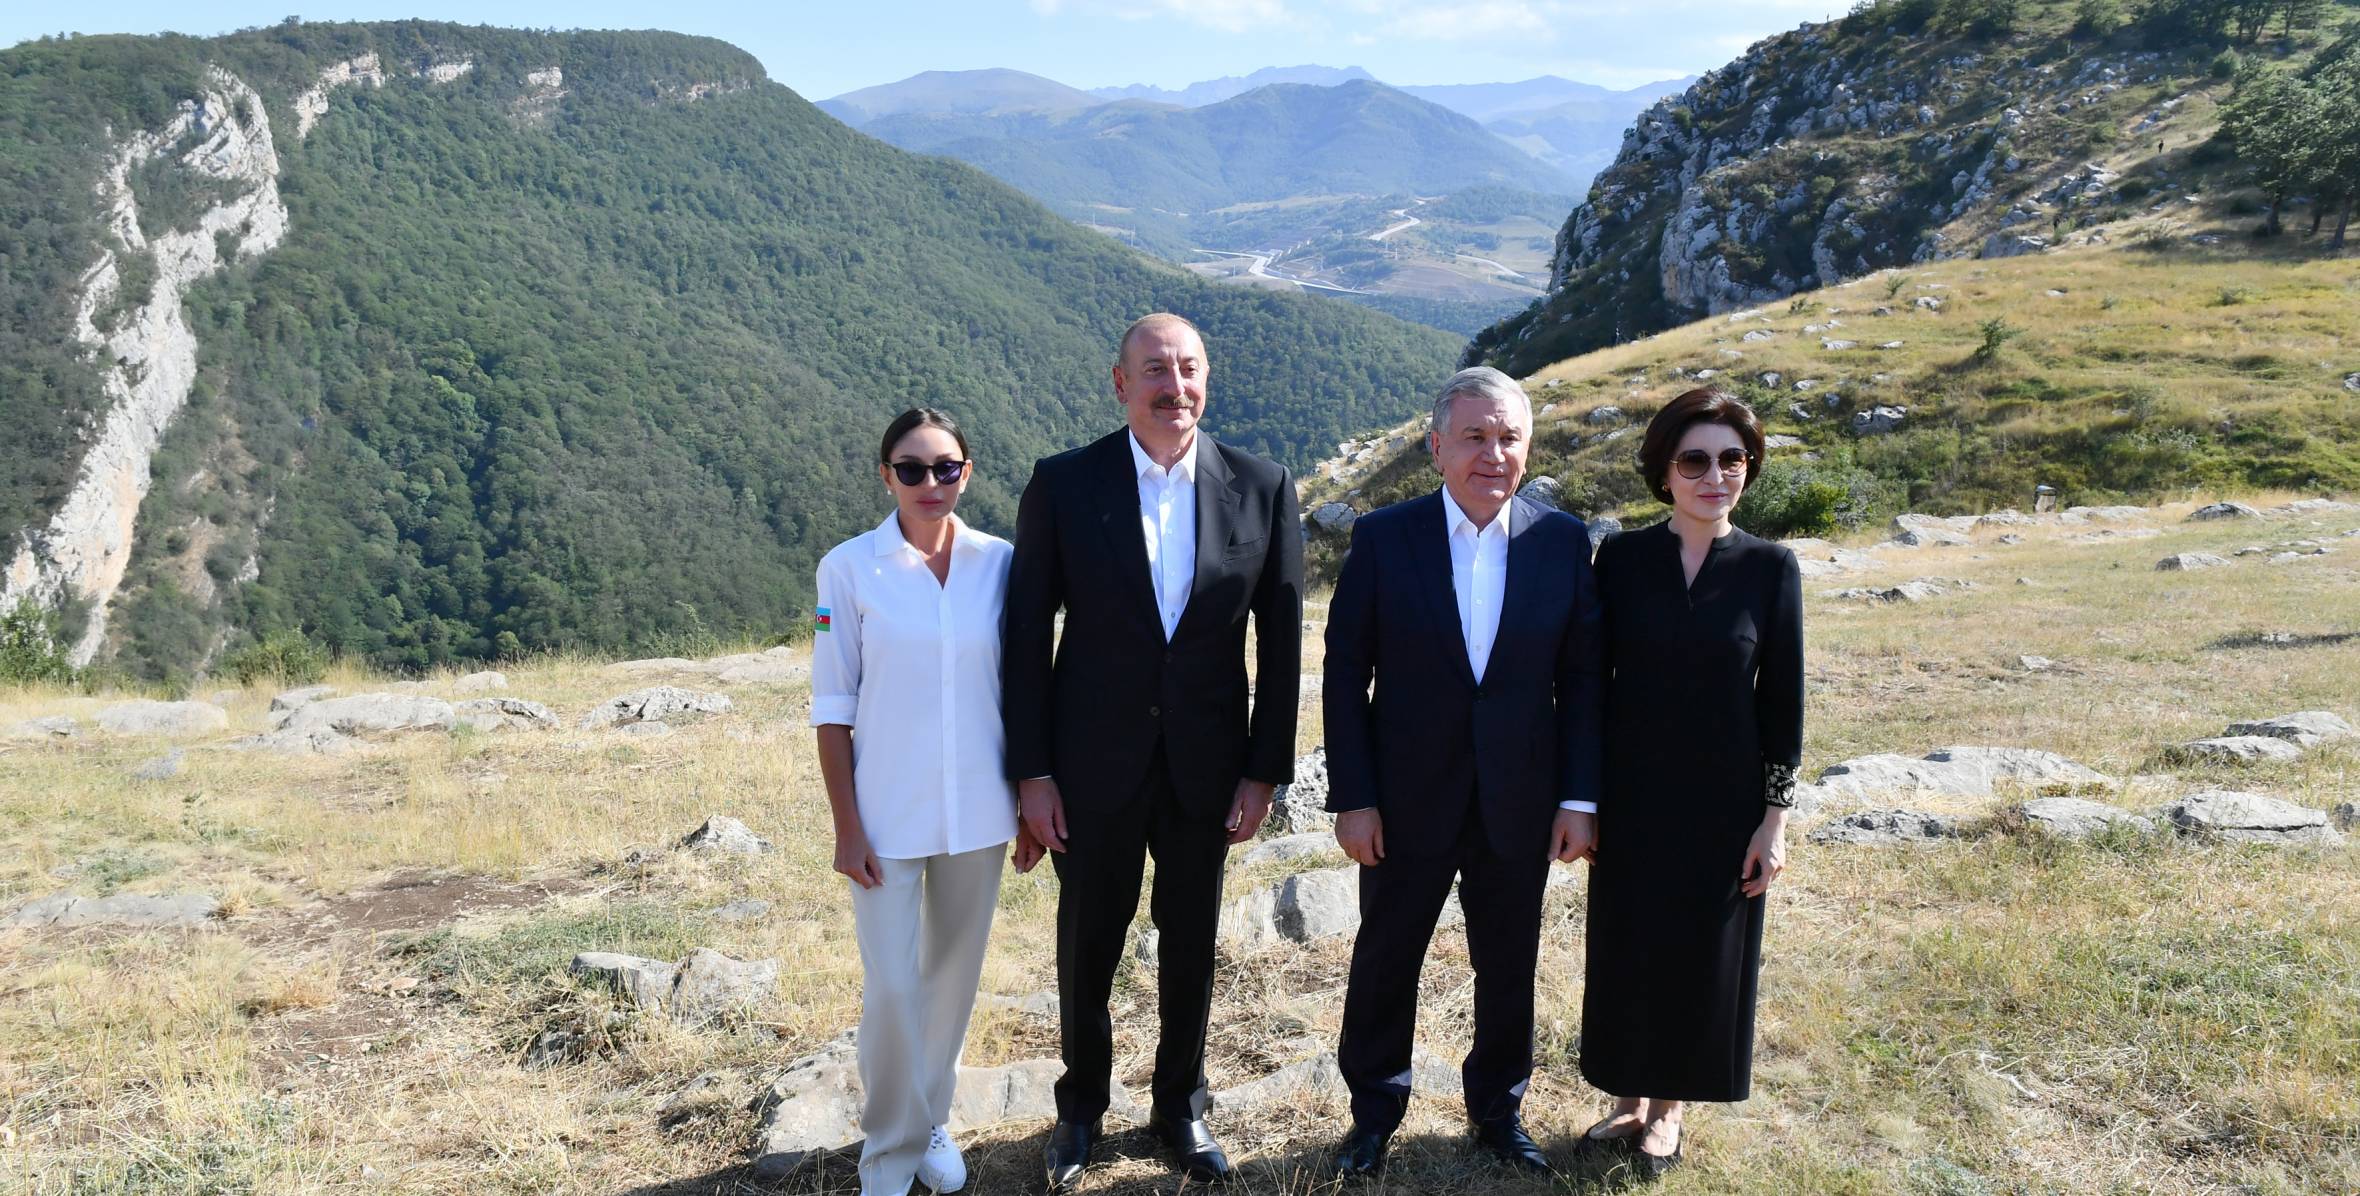 Президенты Азербайджана и Узбекистана и их супруги посетили Шушу